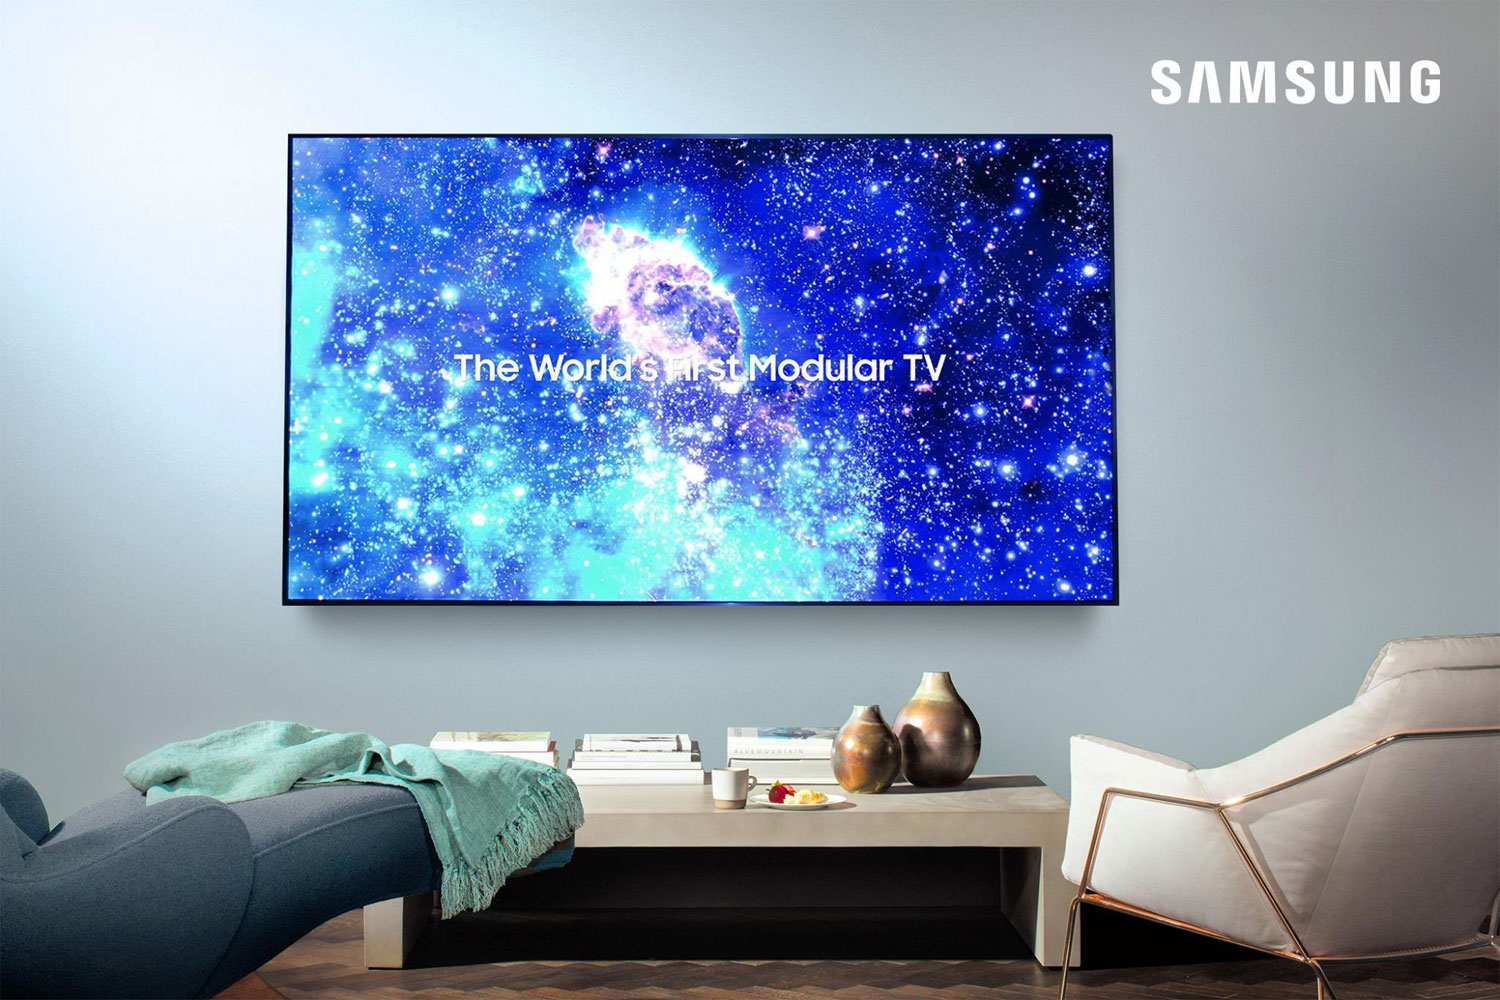 Samsung to launch 75" TV next year - rumor - FlatpanelsHD